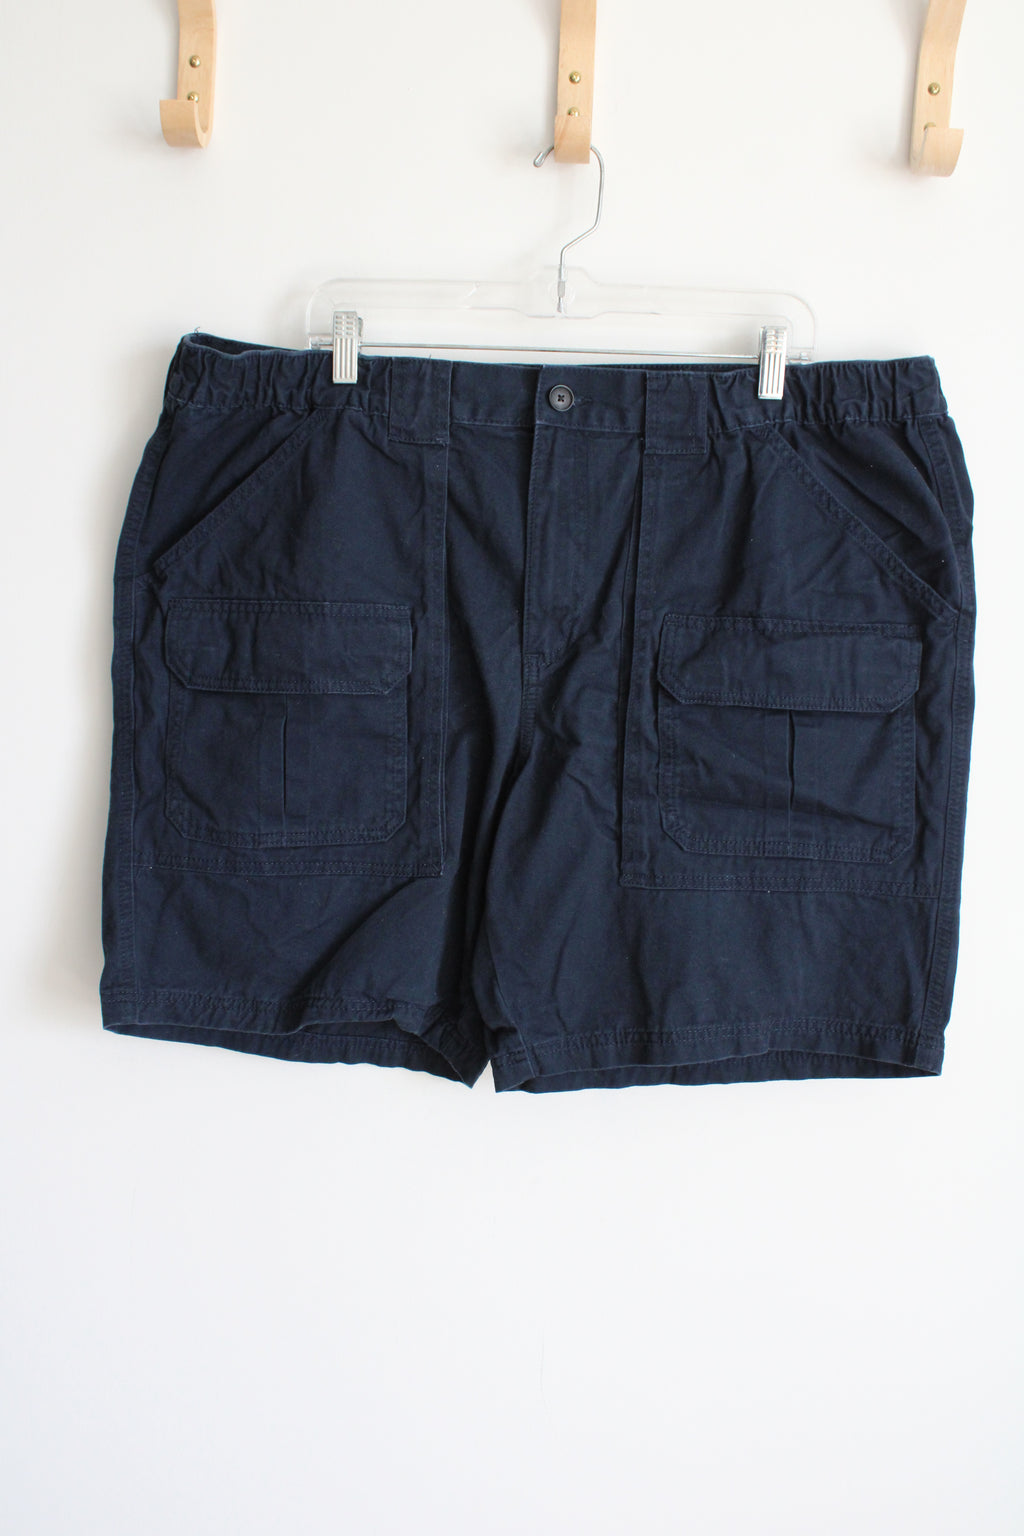 Croft & Barrow Navy Blue Cargo Shorts | 46